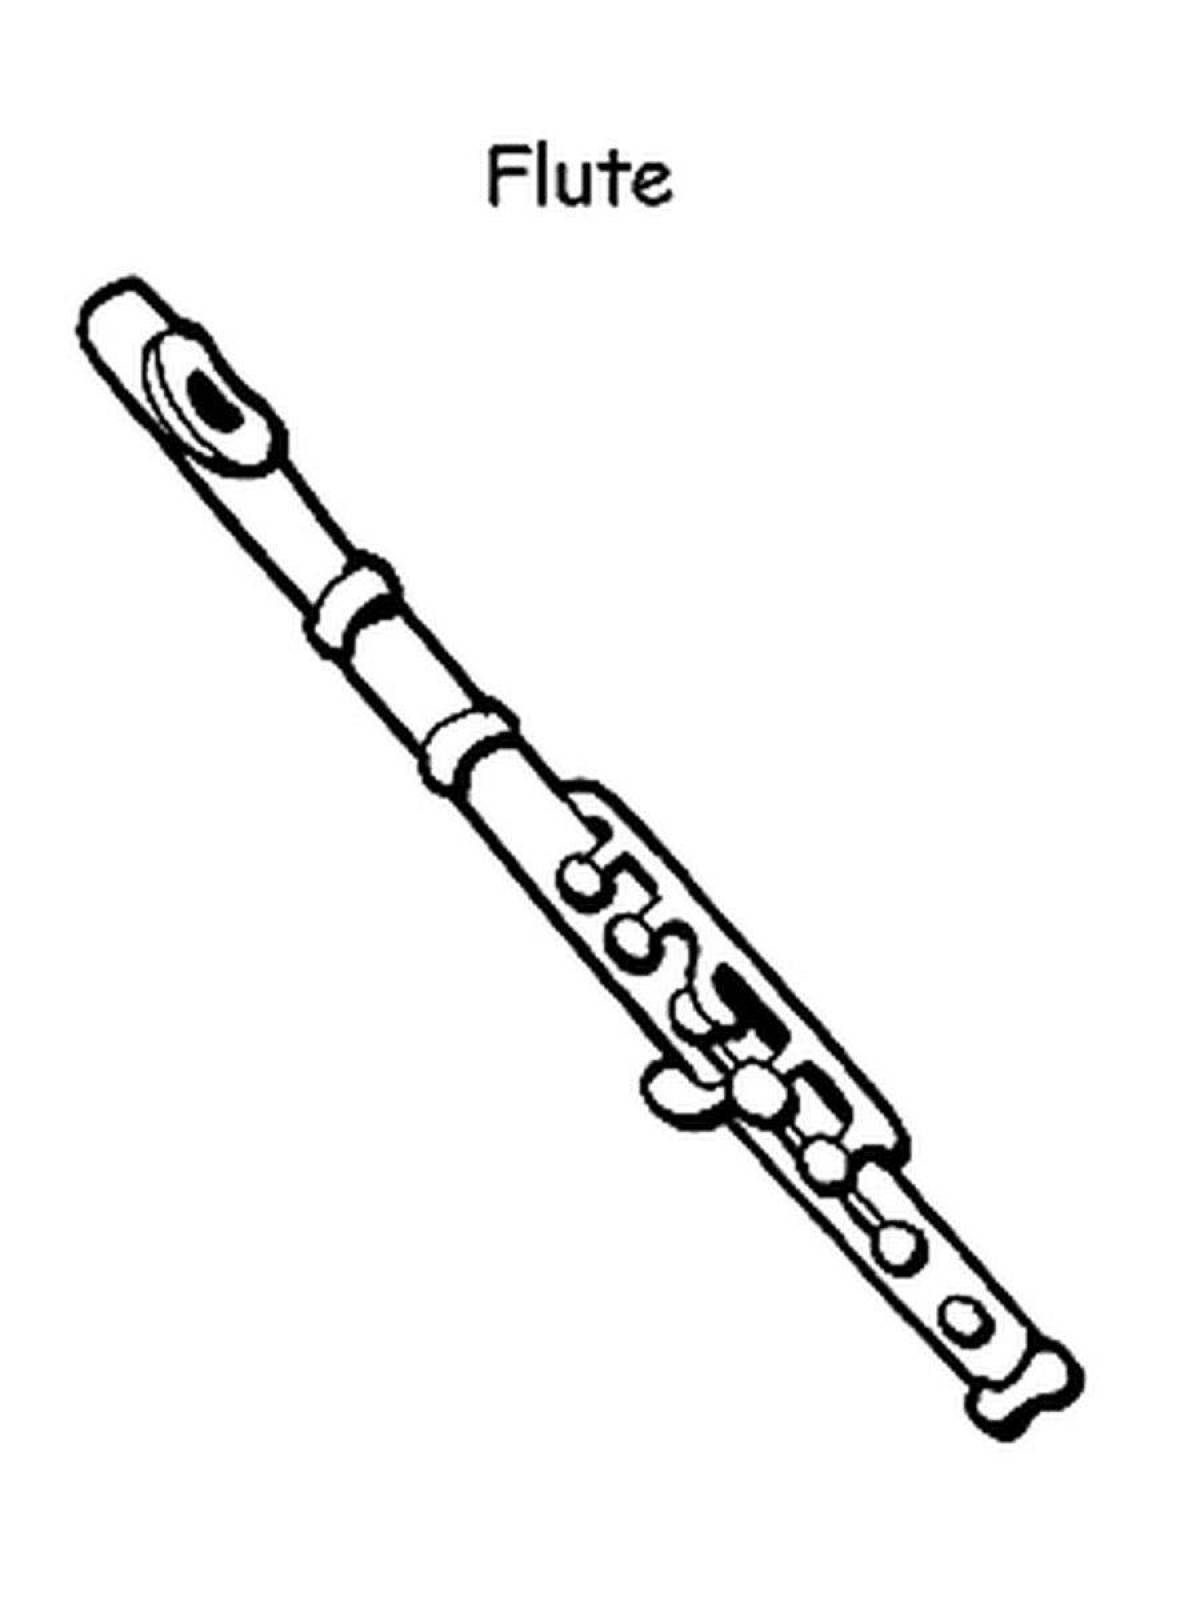 Увлекательная раскраска флейты